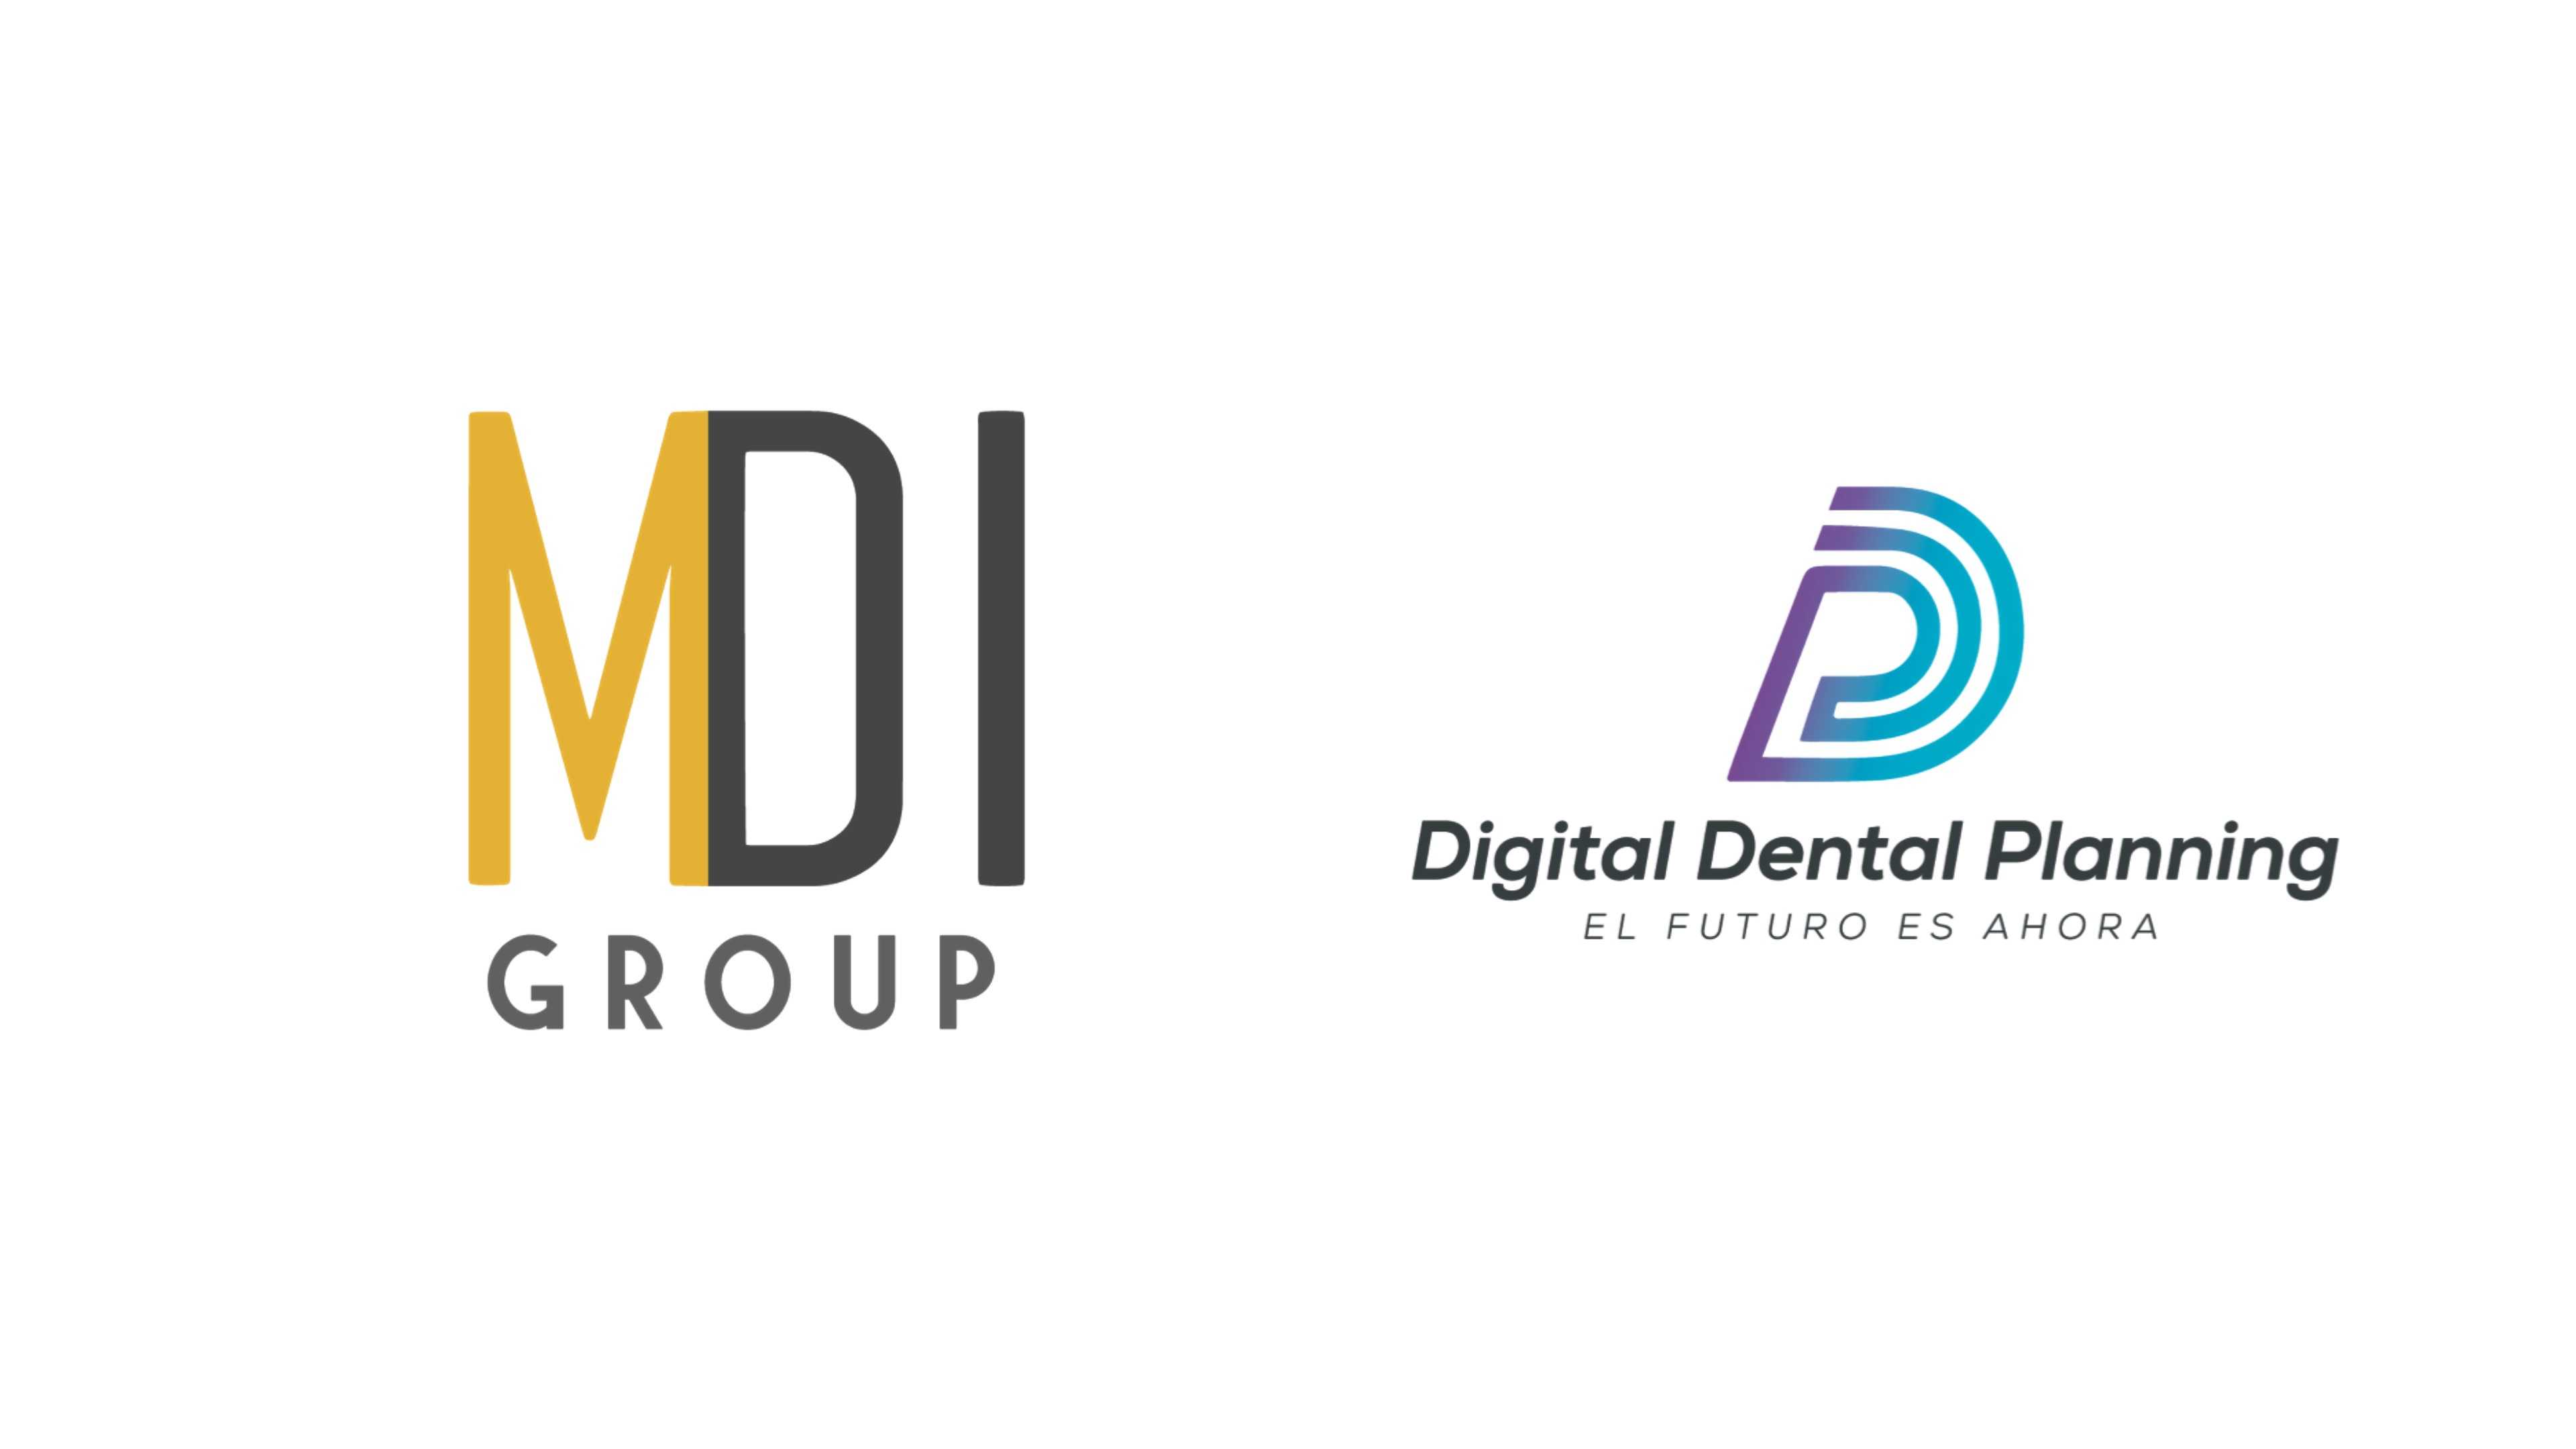 Digital Dental Planning